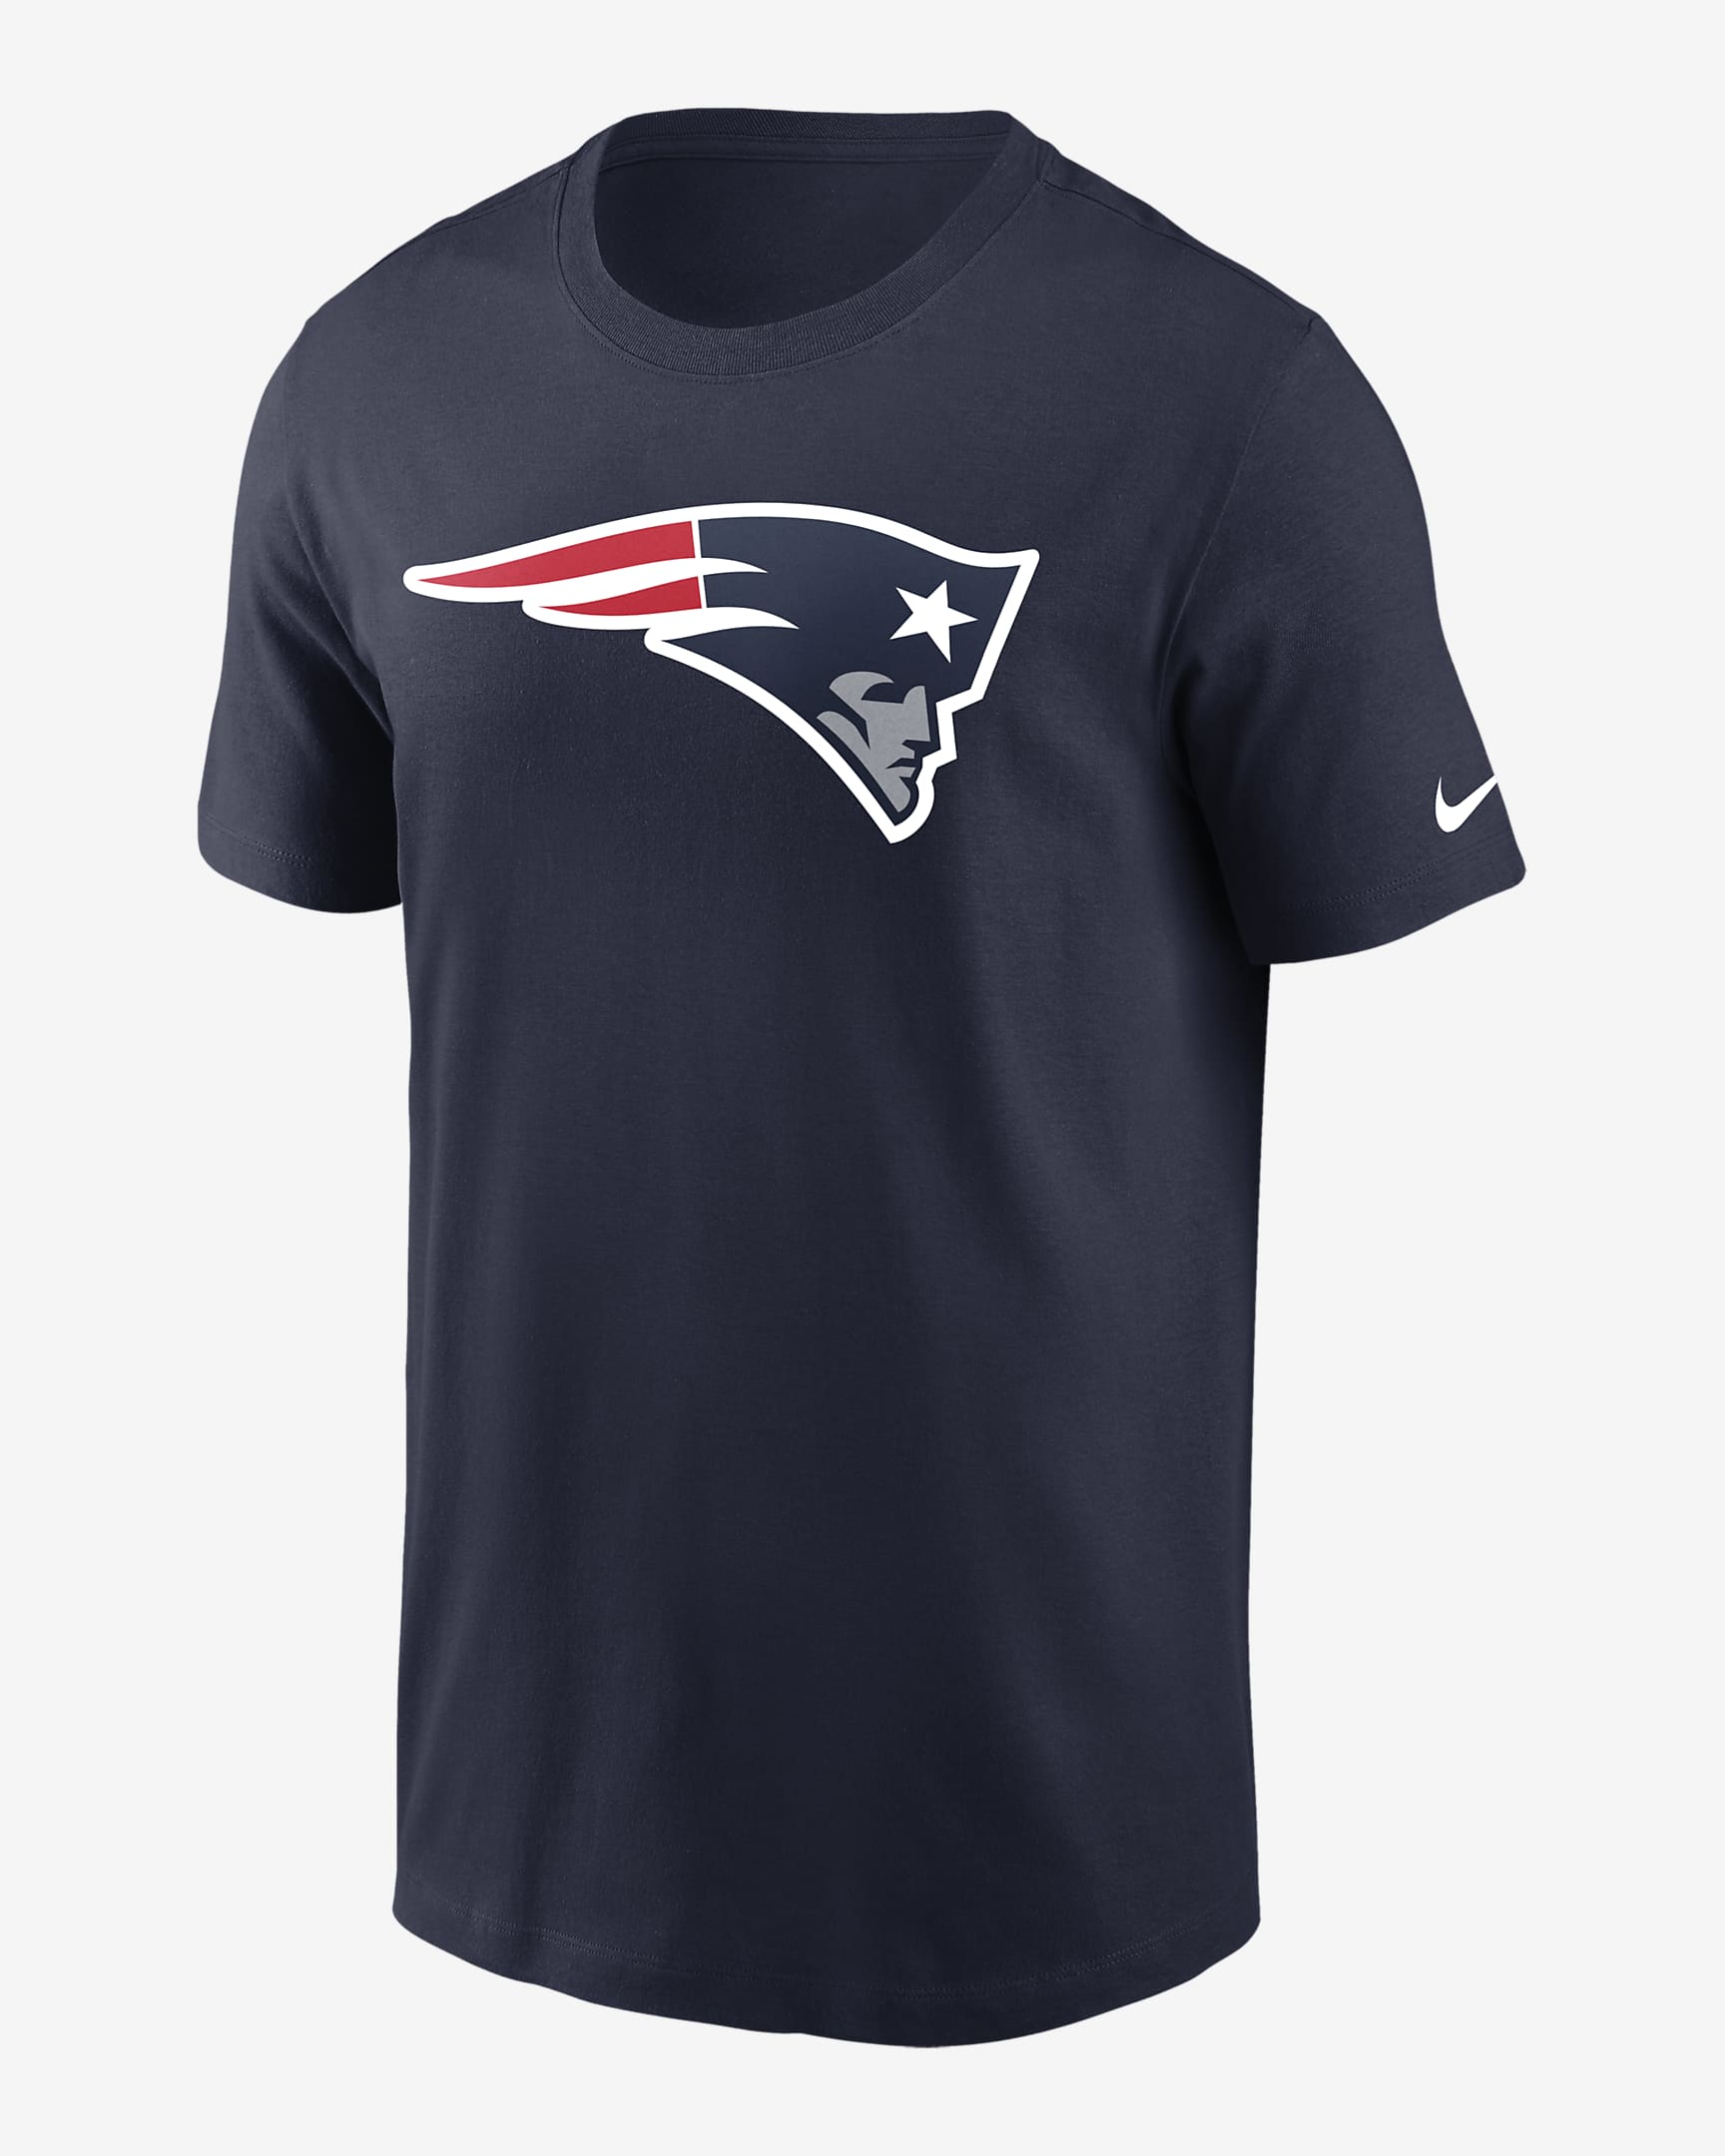 Playera para hombre Nike Logo Essential (NFL New England Patriots ...